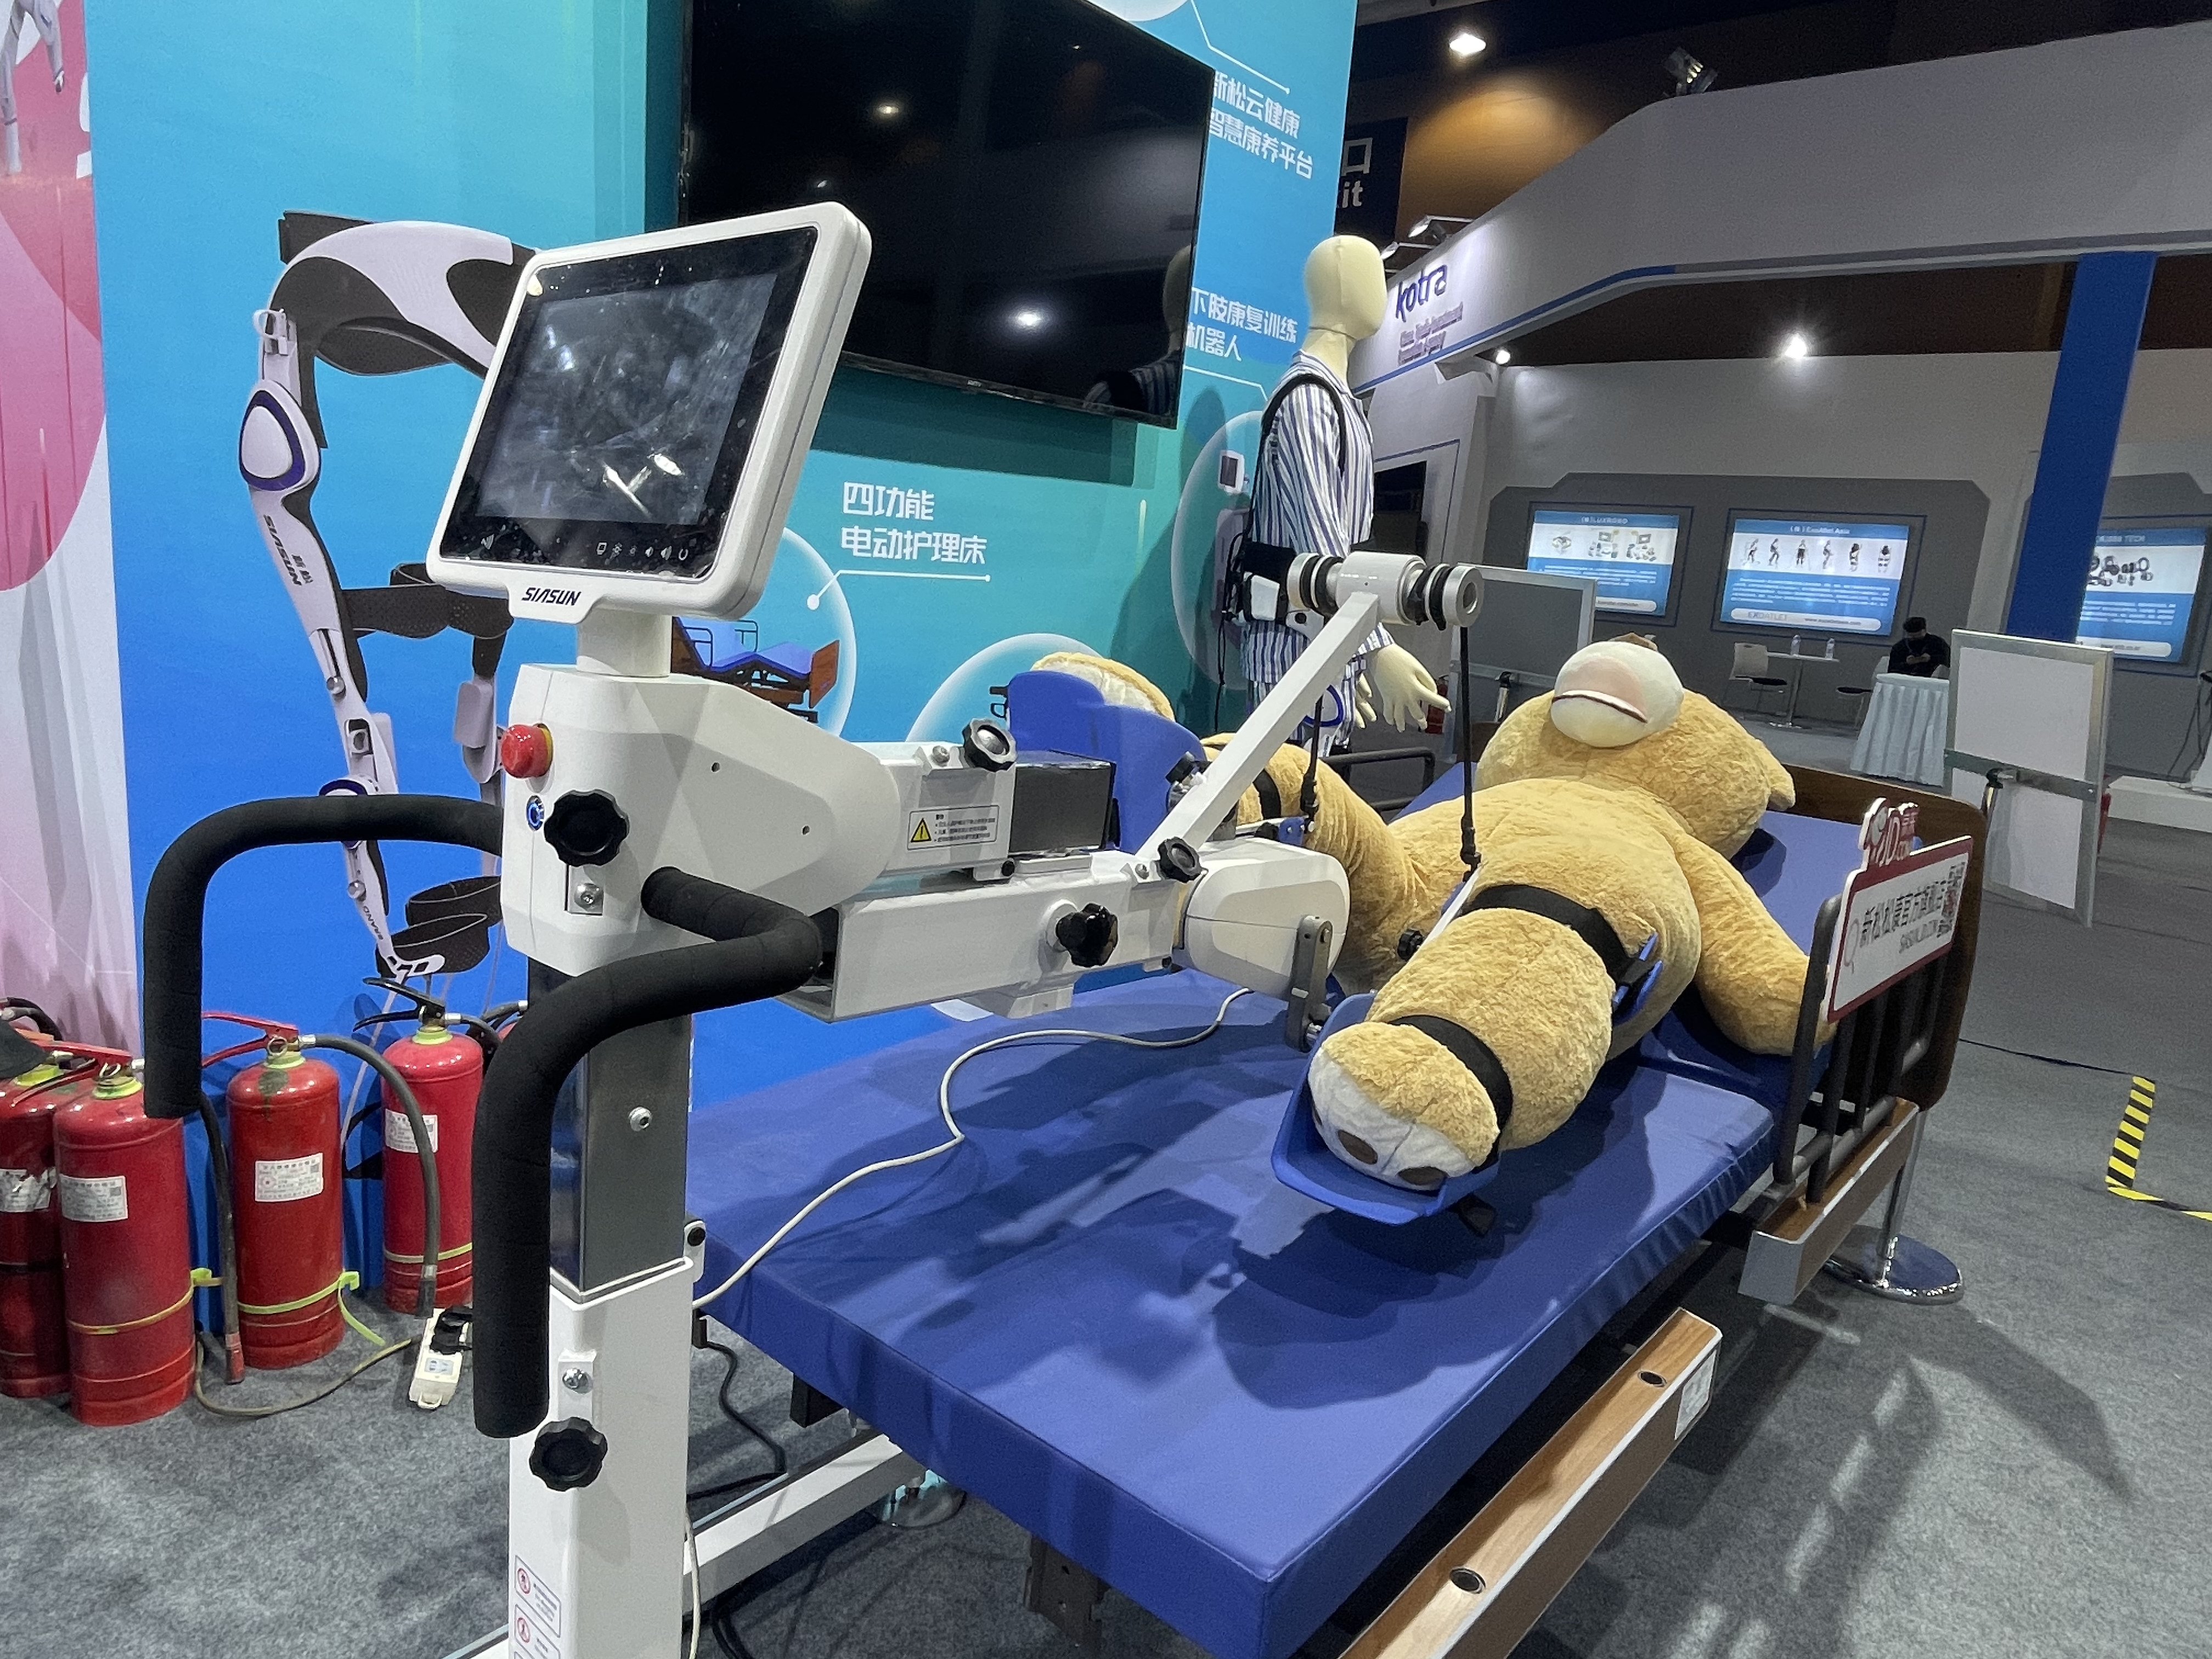 沈阳新松机器人自动化股份有限公司展出的智能康复训练床.